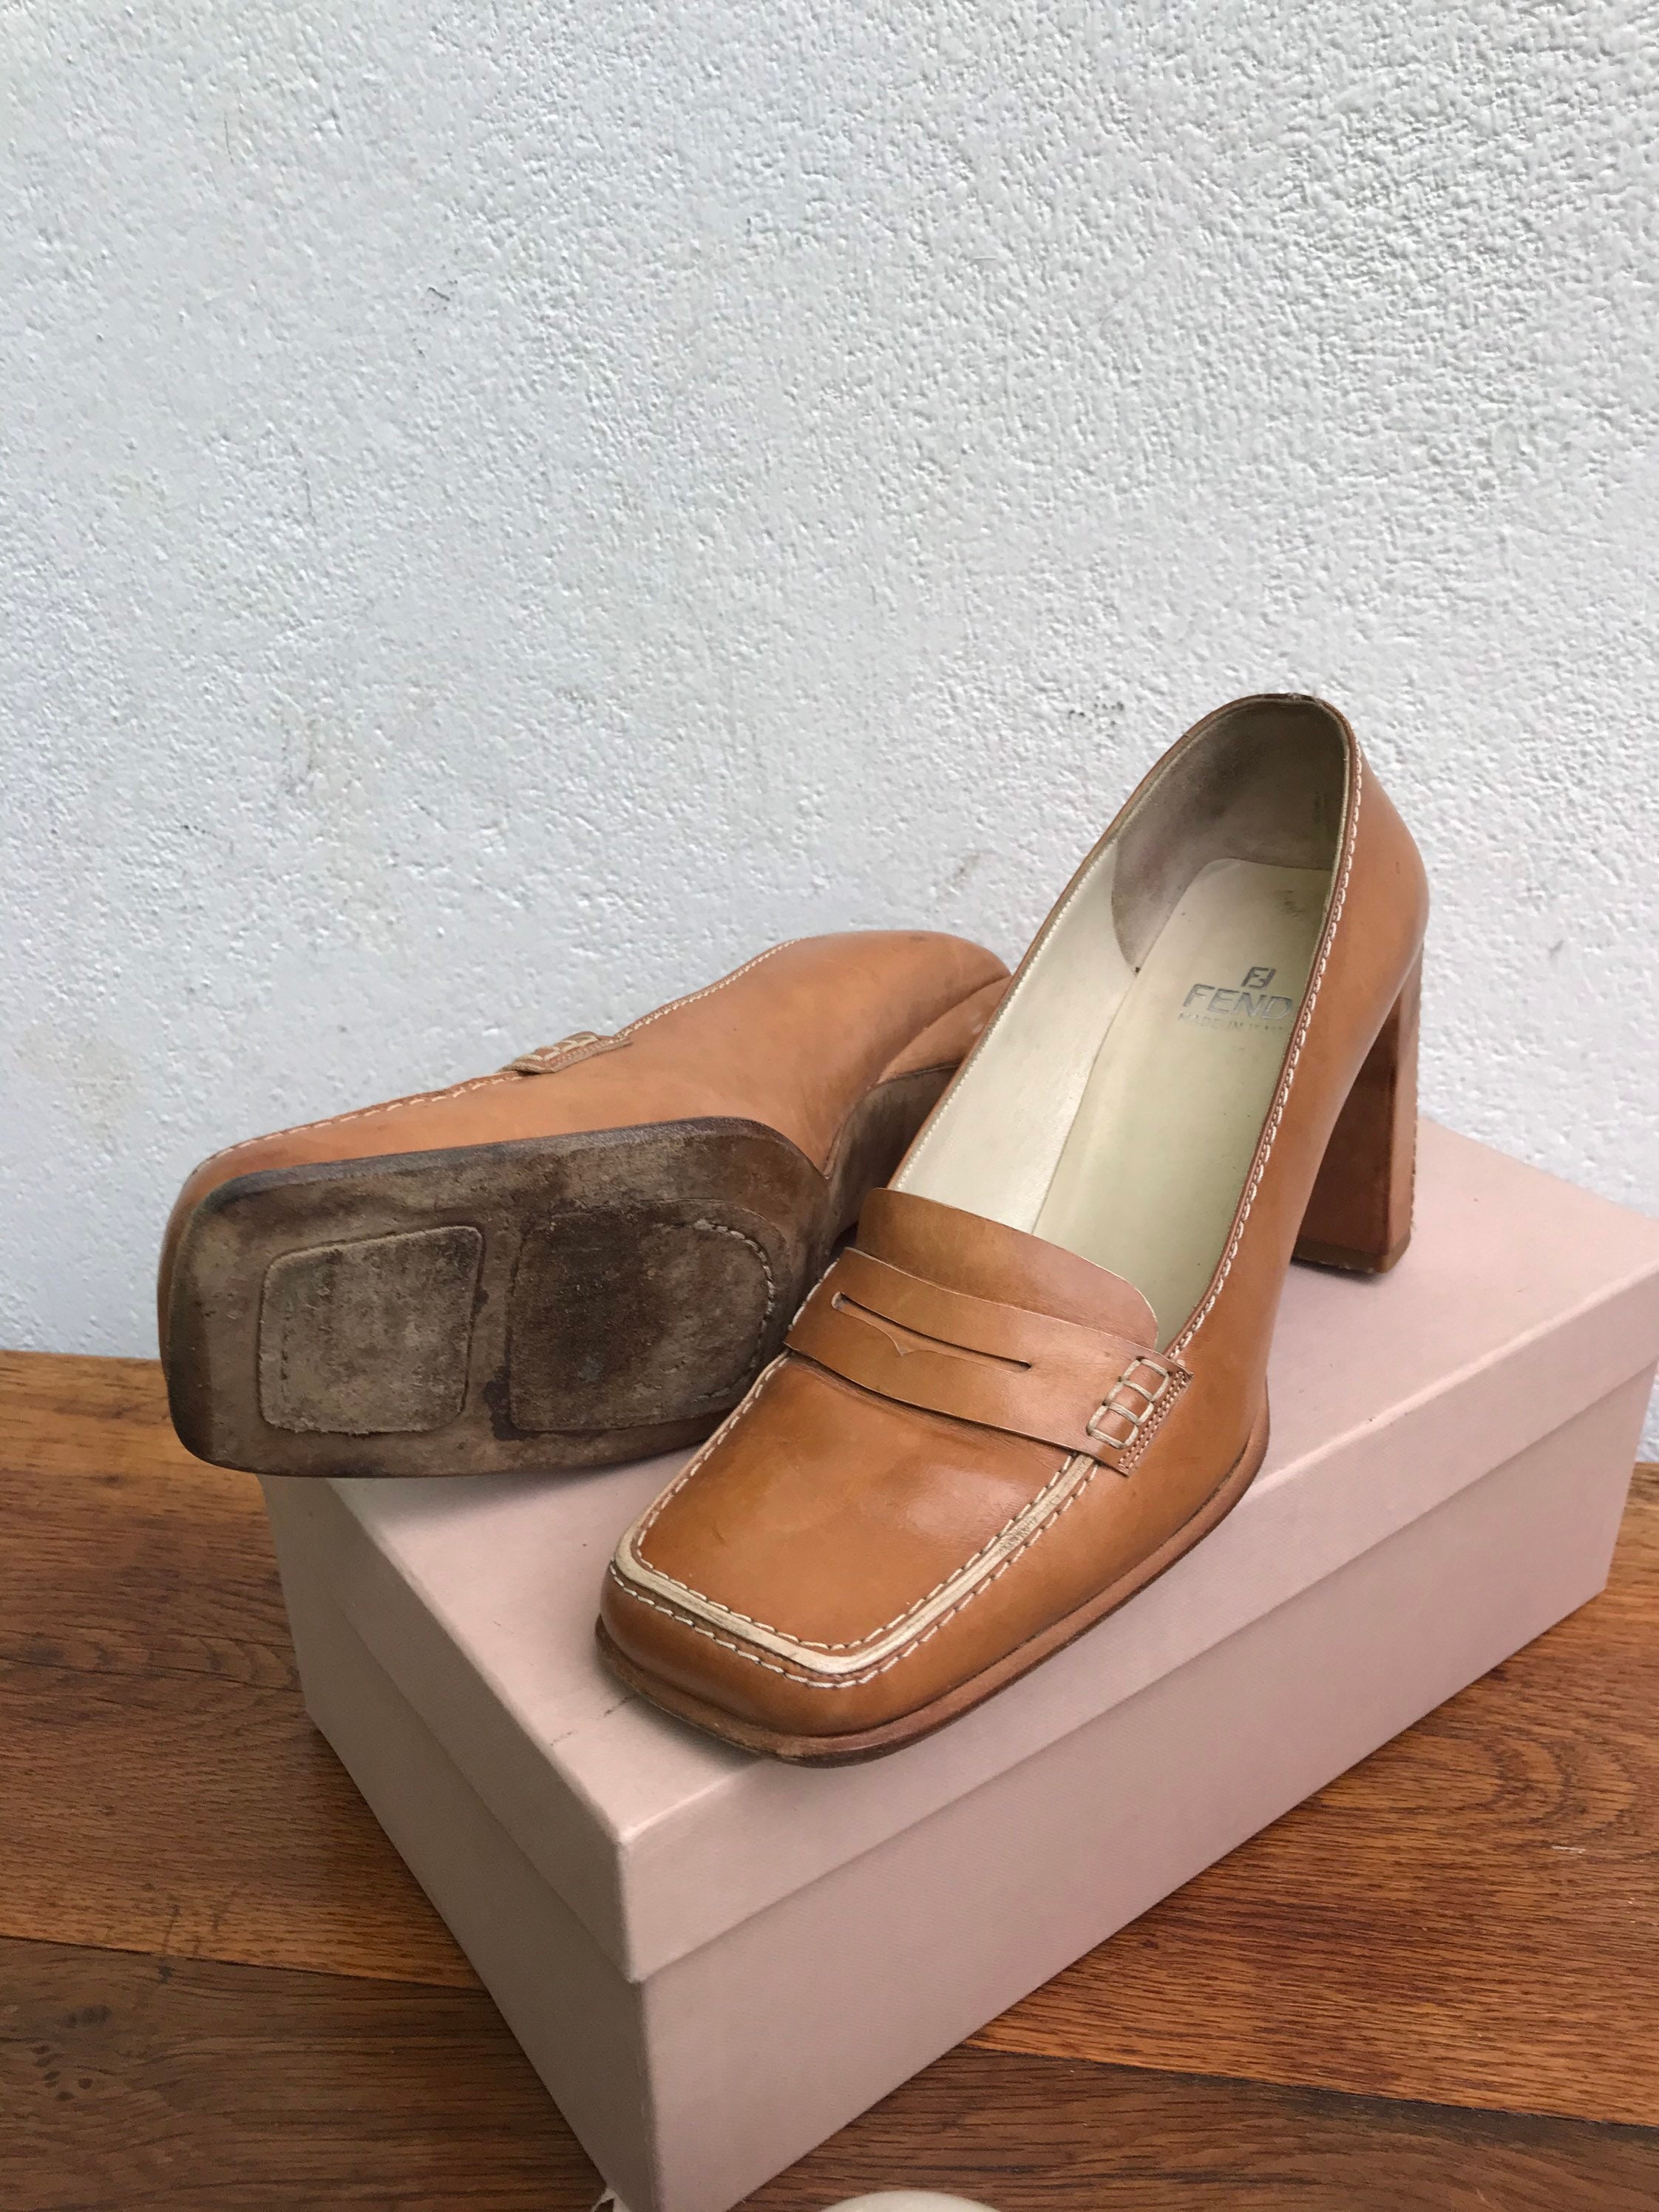 FENDI LEATHER LOAFERS Fendi Loafers 70s Vintage Fendi | Etsy